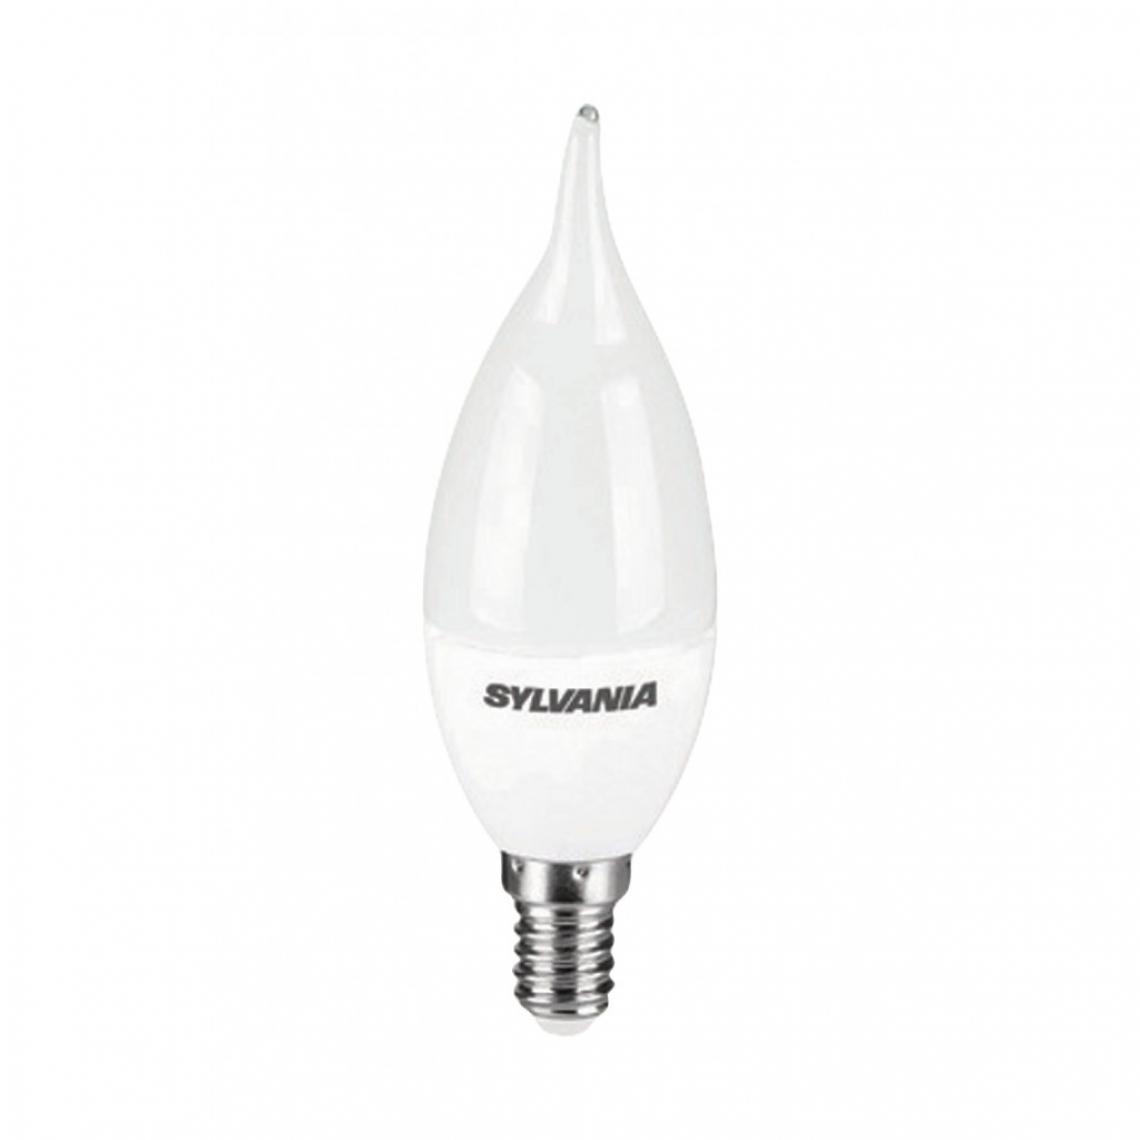 Alpexe - Ampoule LED E14 Bougie Bent Tip 6.5 W 470 lm 2700 K - Ampoules LED